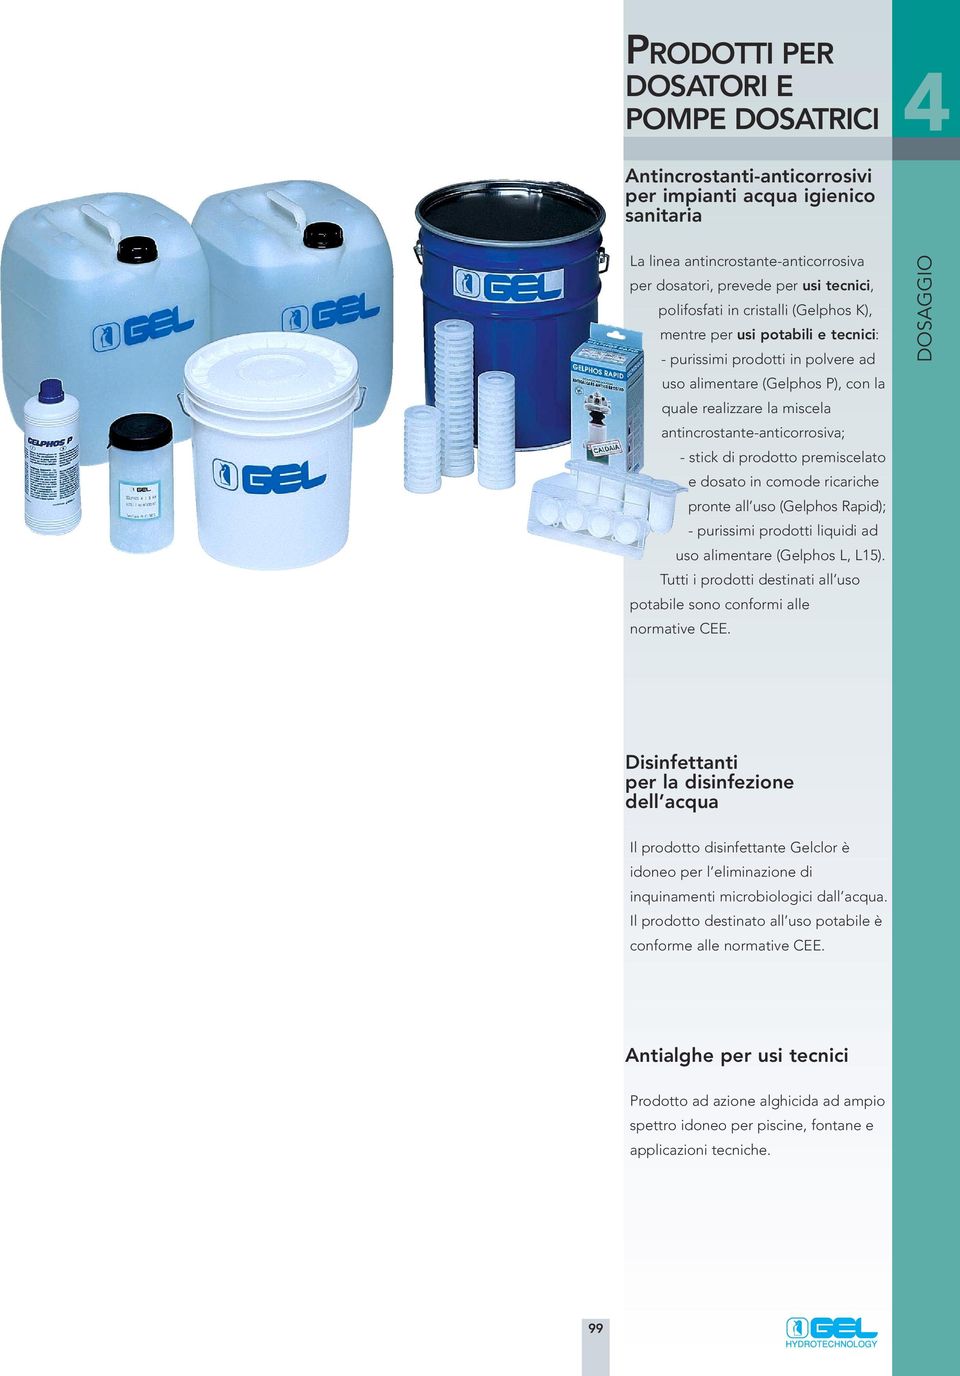 antincrostante-anticorrosiva; - stick di prodotto premiscelato e dosato in comode ricariche pronte all uso (Gelphos Rapid); - purissimi prodotti liquidi ad uso alimentare (Gelphos L, L15).